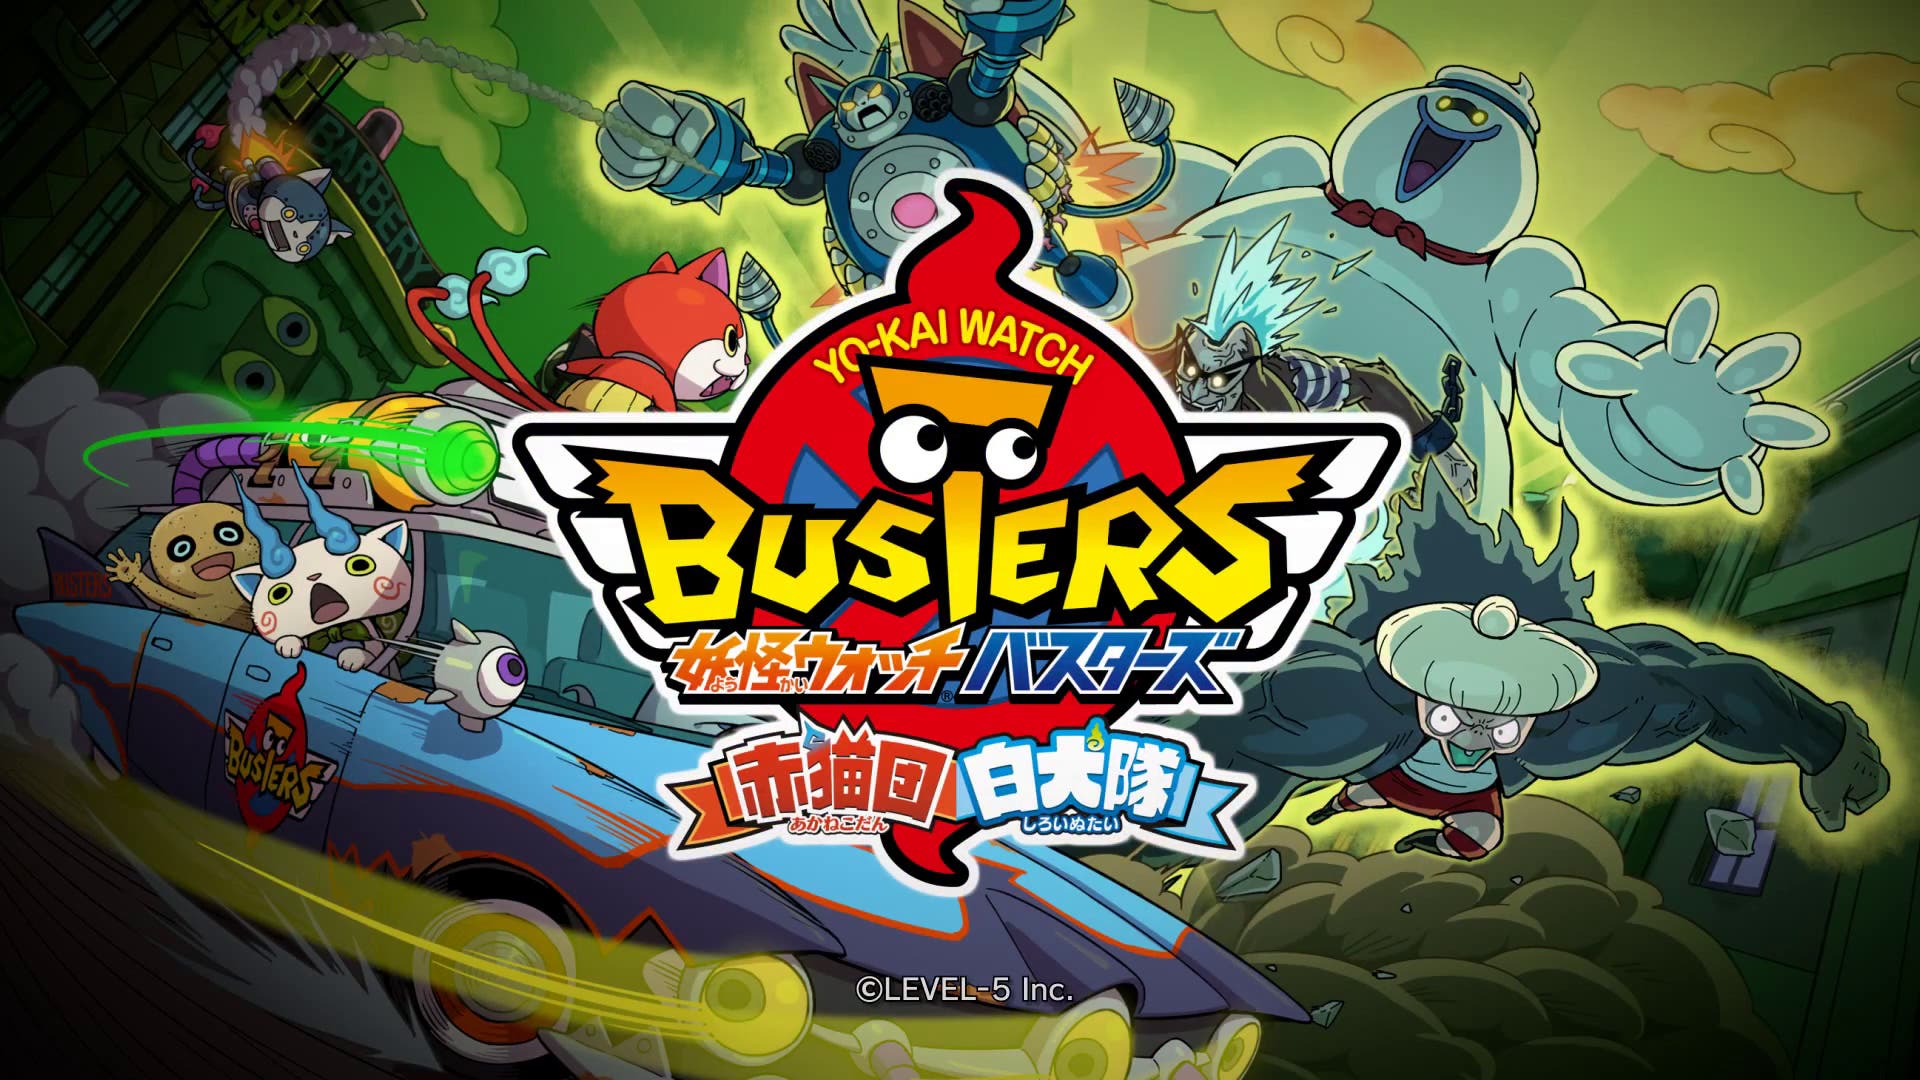 Segundo tráiler de Yo-Kai Watch Busters para Nintendo 3DS